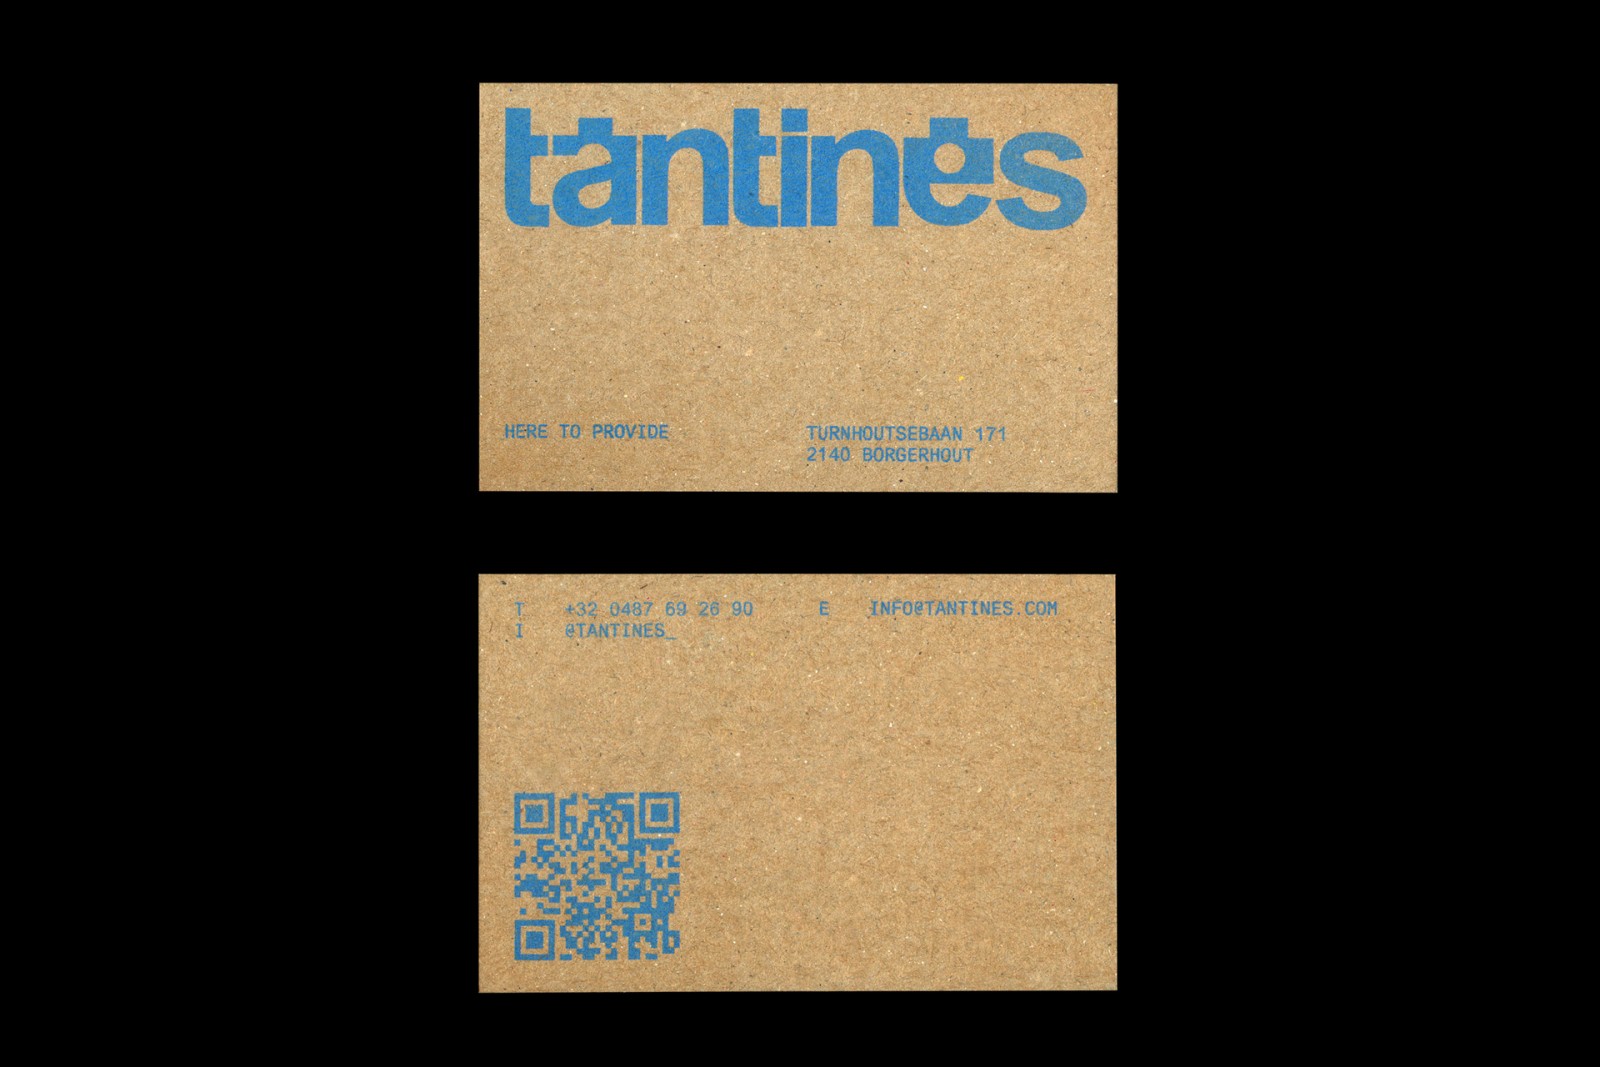 Tantines外卖餐厅品牌视觉设计